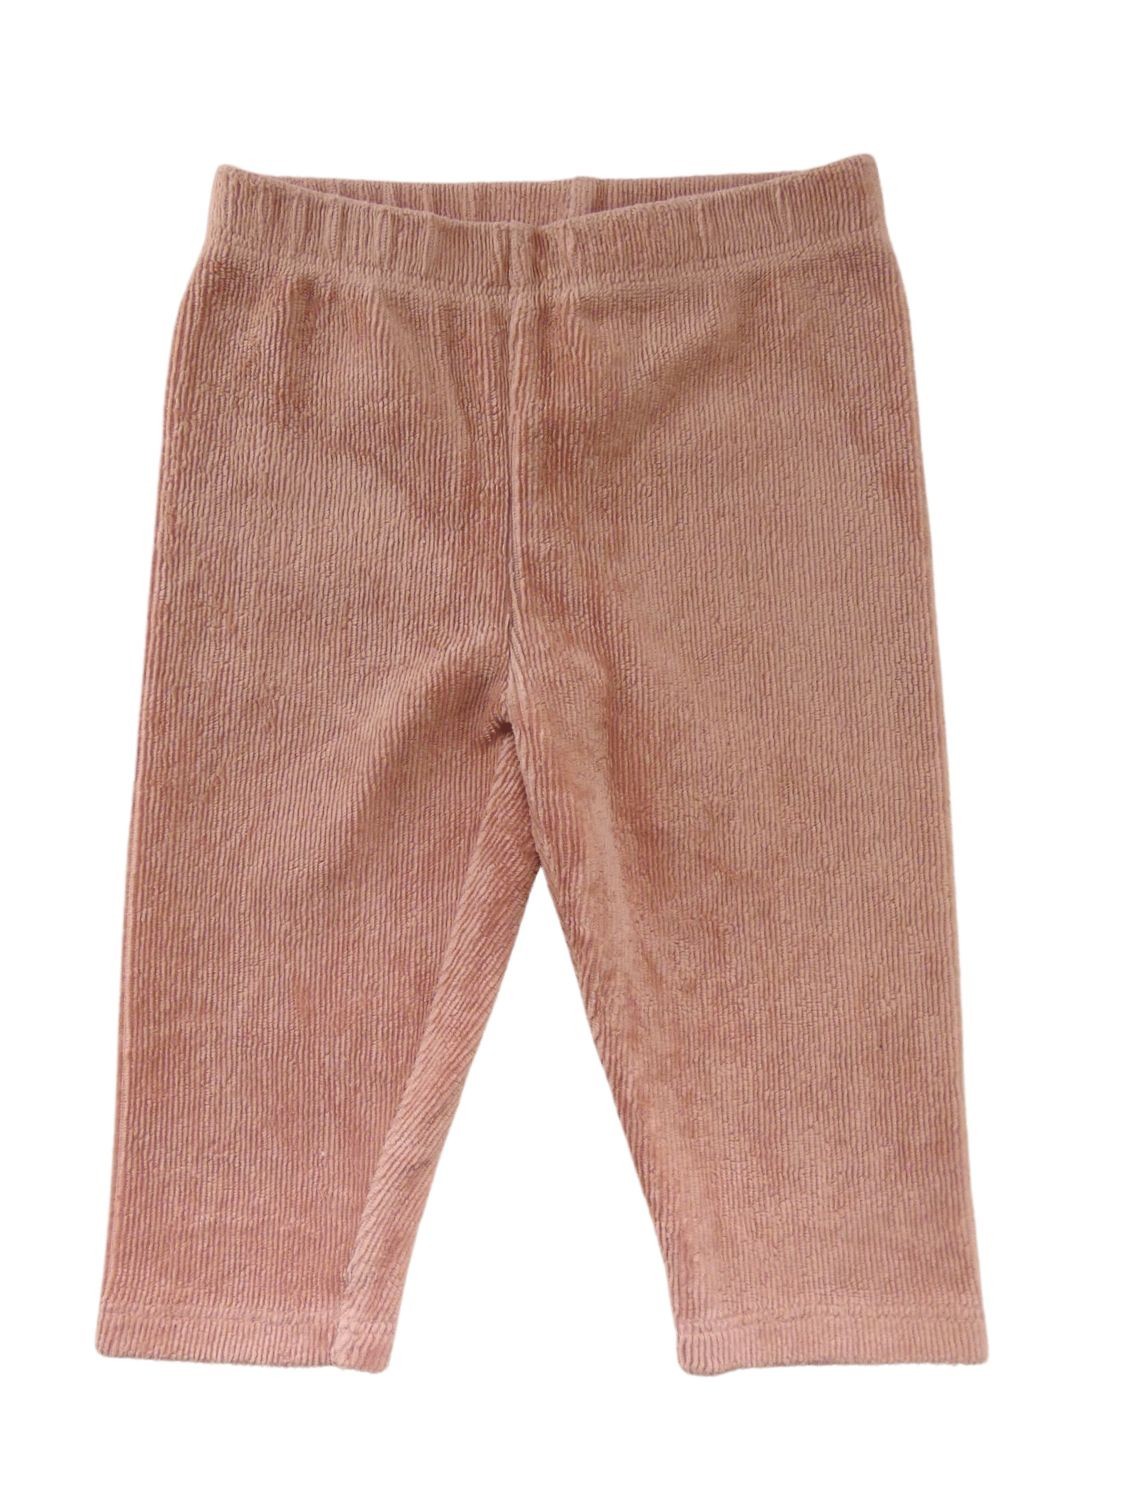 Pantalon rose pale côtelé  taille 6 mois